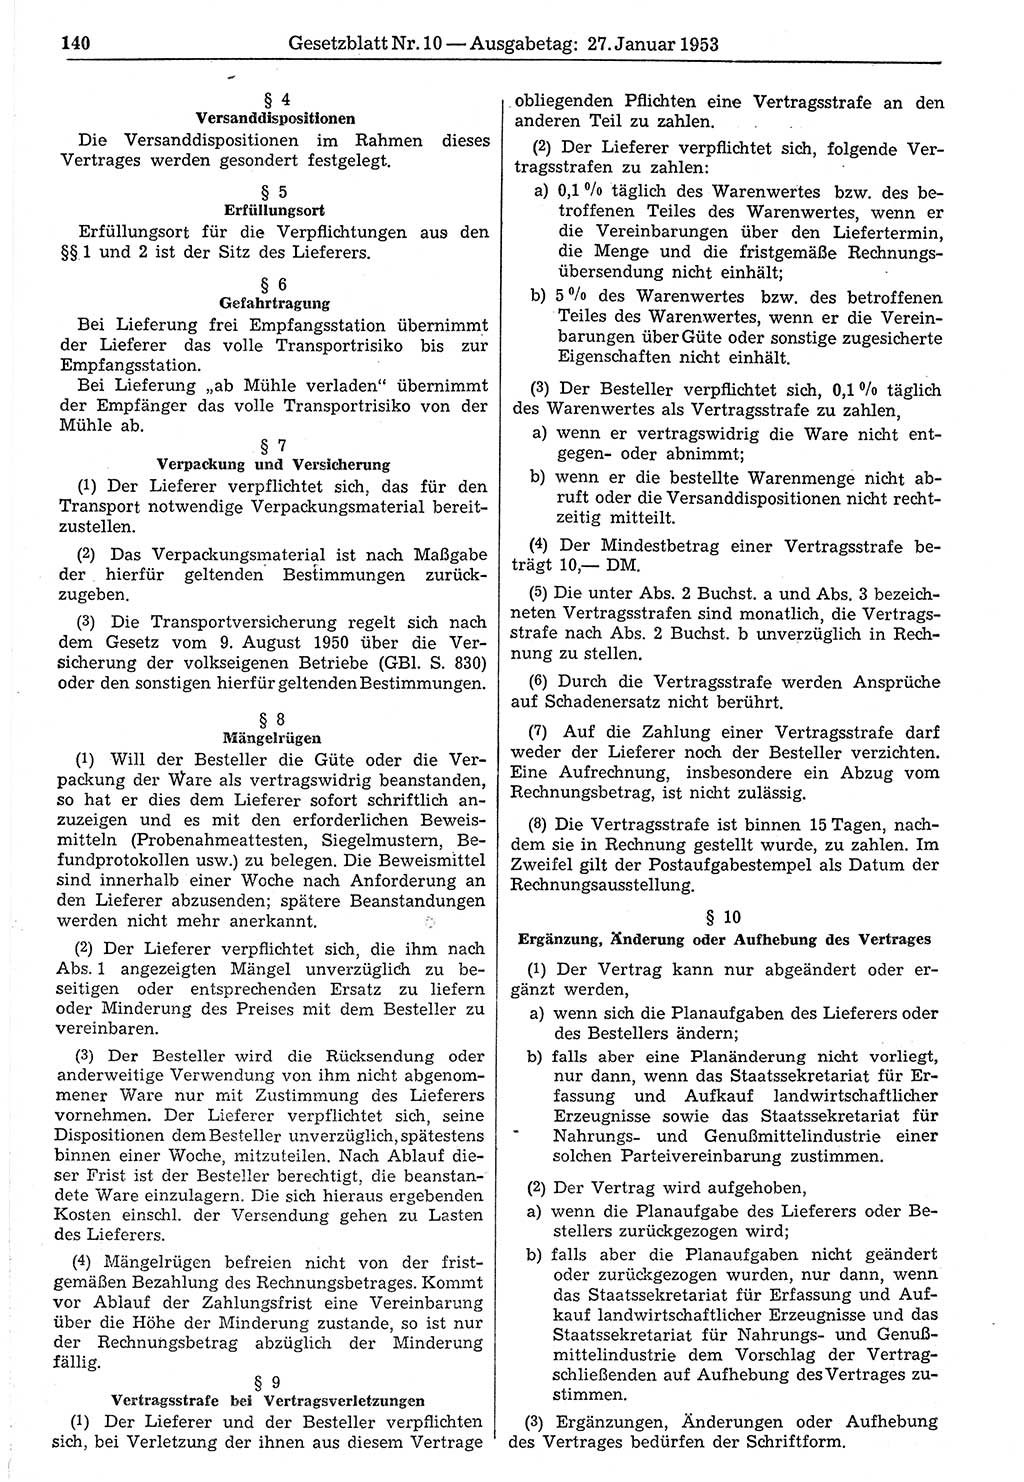 Gesetzblatt (GBl.) der Deutschen Demokratischen Republik (DDR) 1953, Seite 140 (GBl. DDR 1953, S. 140)